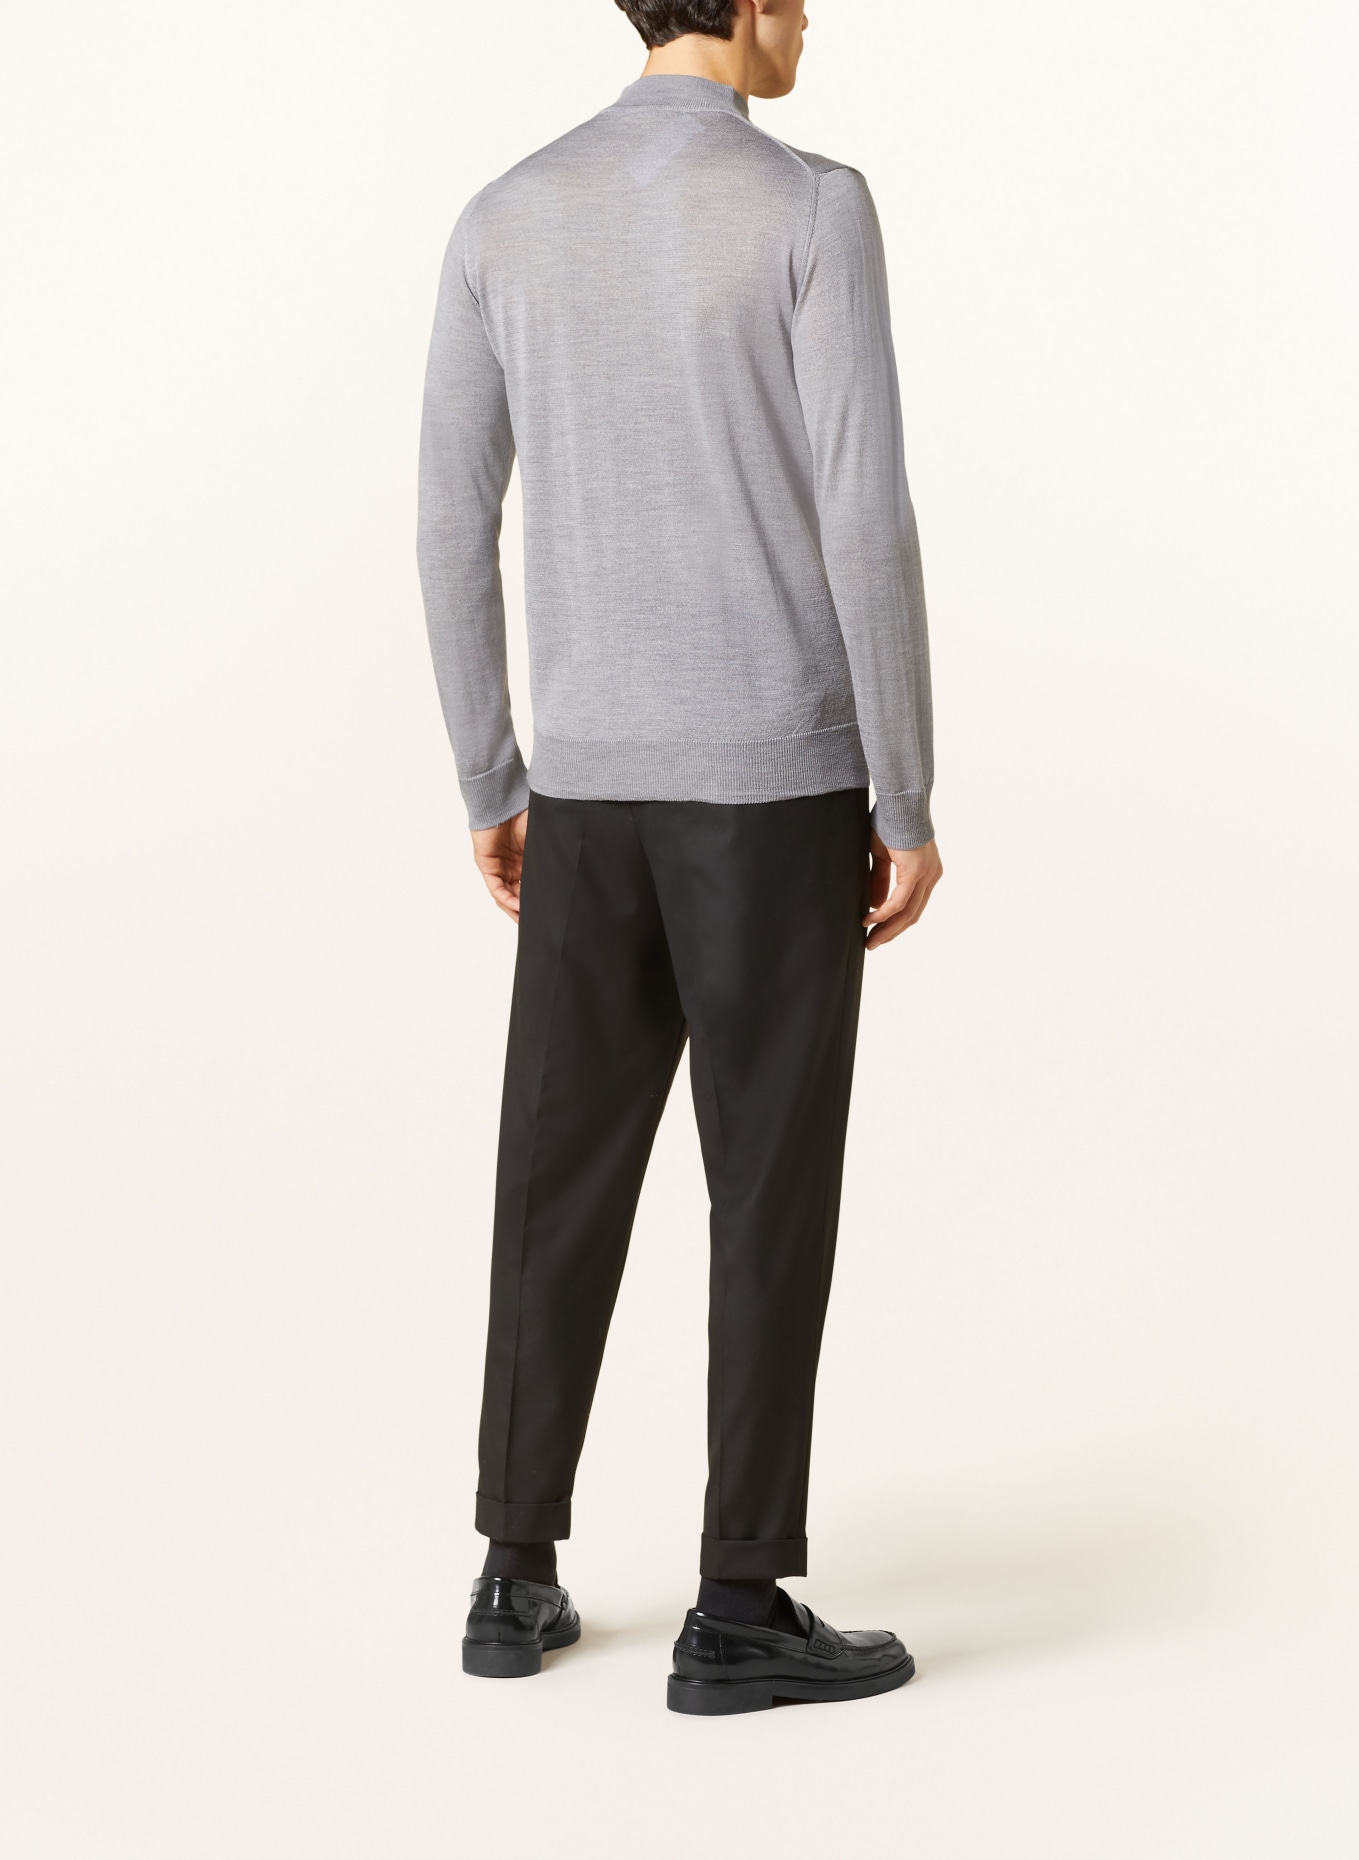 BALDESSARINI Sweater, Color: GRAY (Image 3)